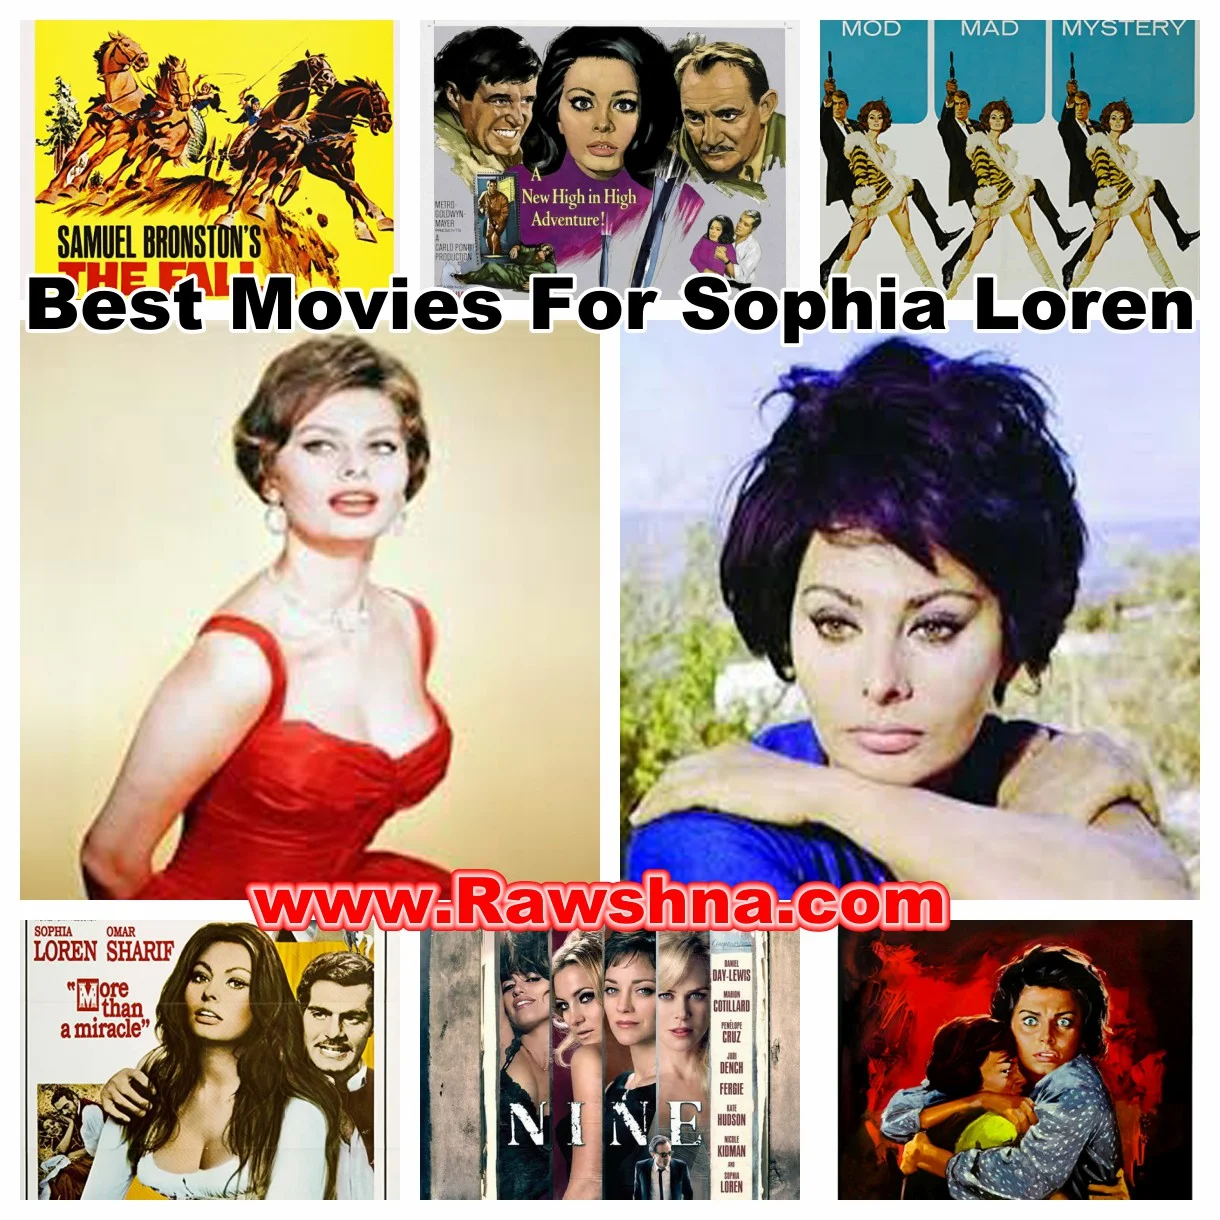 شاهد افضل افلام صوفيا لورين على الاطلاق شاهد قائمة أفضل 8 افلام صوفيا لورين على الإطلاق معلومات عن صوفيا لورين | Sophia Loren